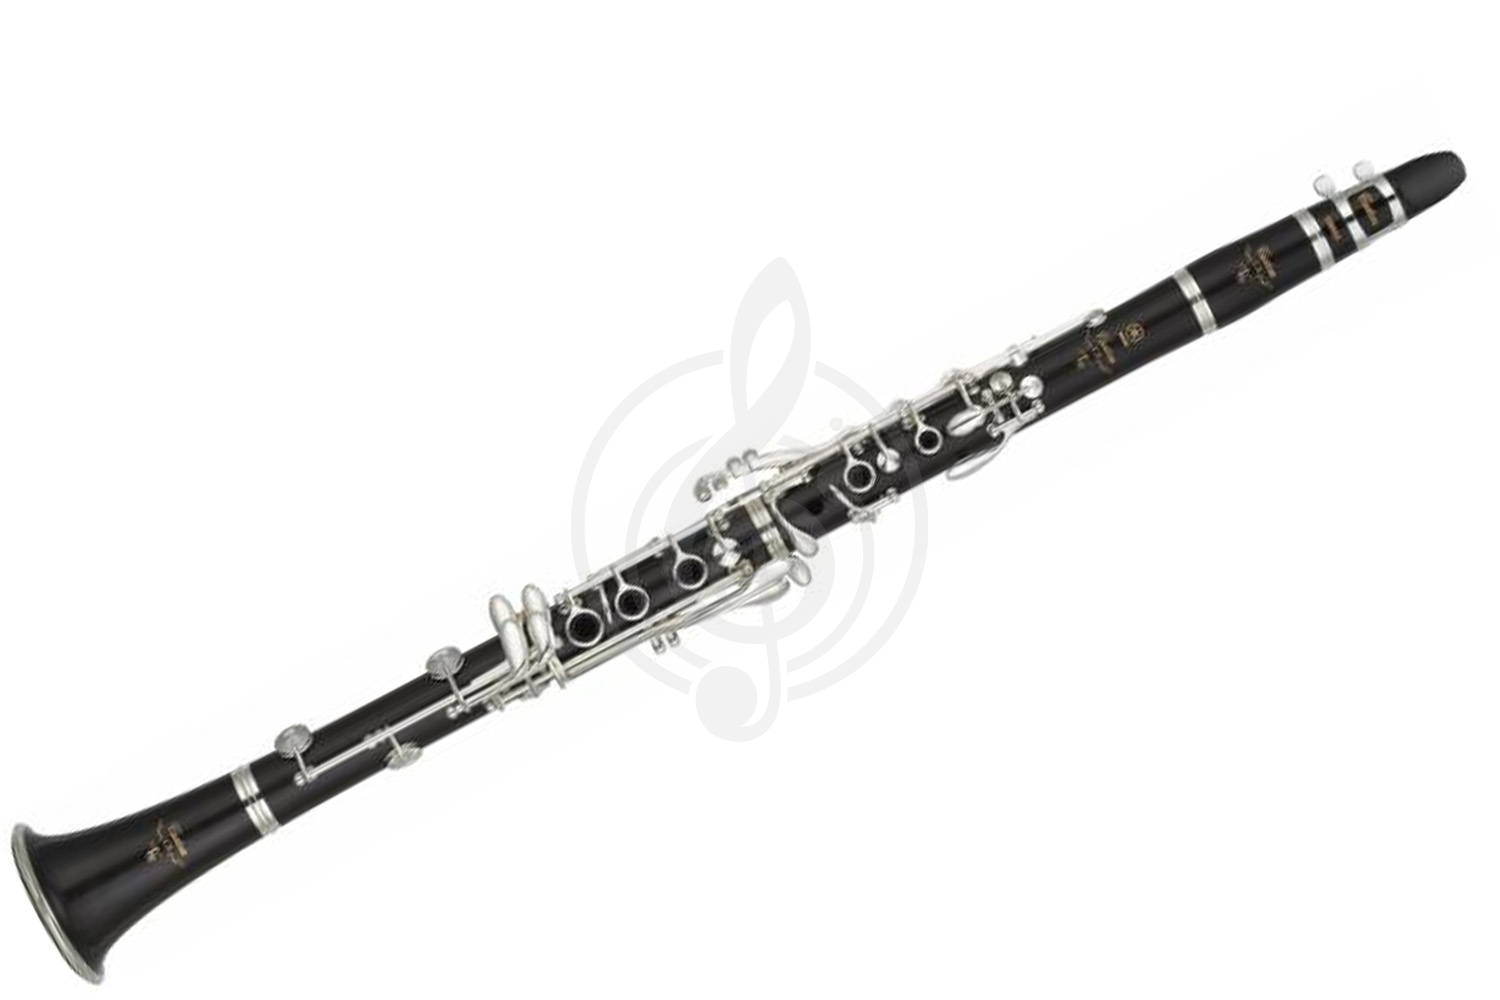 Кларнет Кларнеты Yamaha Yamaha YCL-CSVR-A - кларнет in A профессиональный, чёрное дерево, ручная работа, 65мм бочёнок YCL-CSVR-A - фото 1